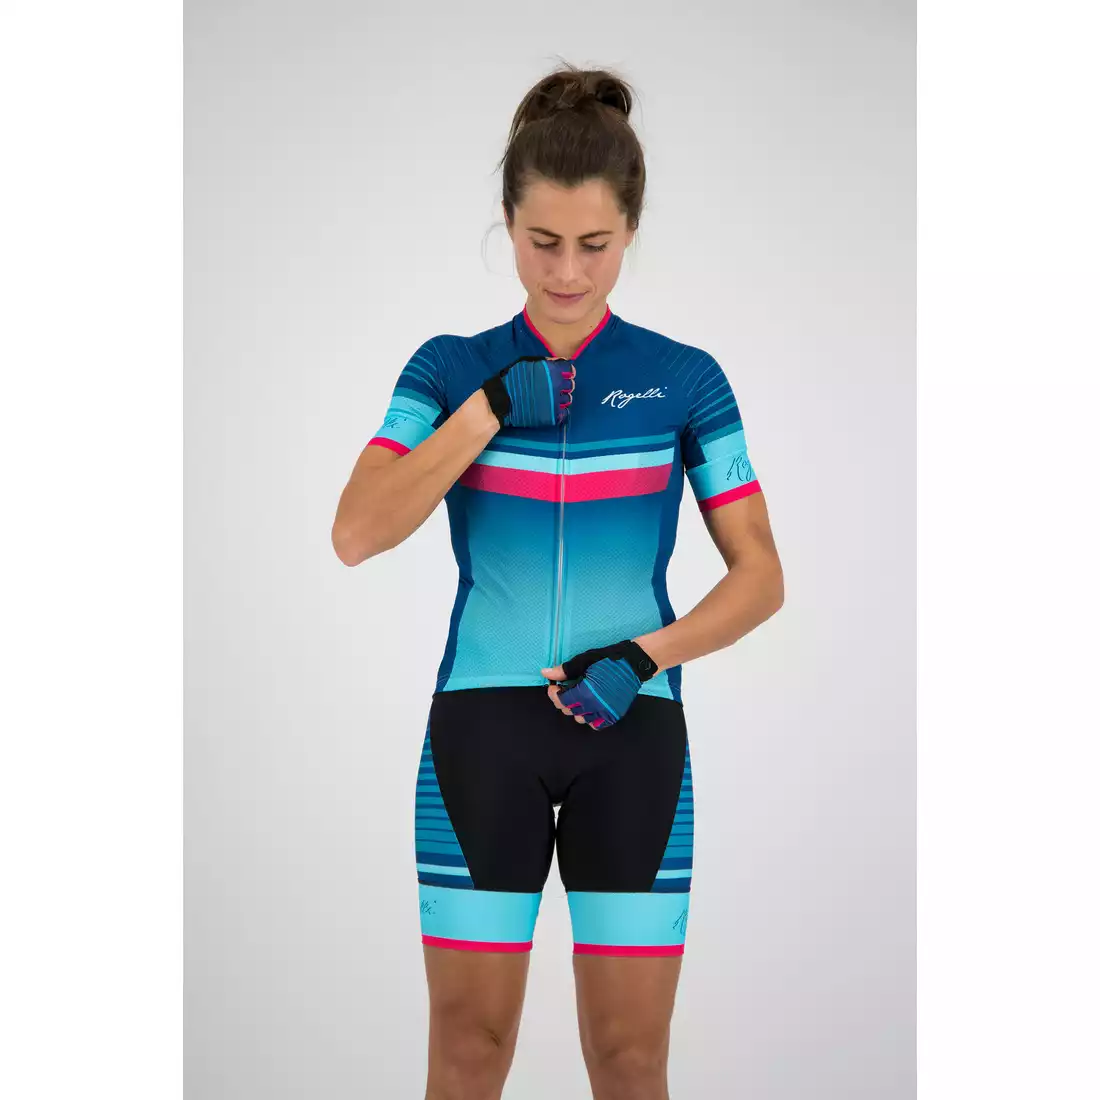 Rogelli Impress 010.160 damska koszulka rowerowa Niebieski/różowy